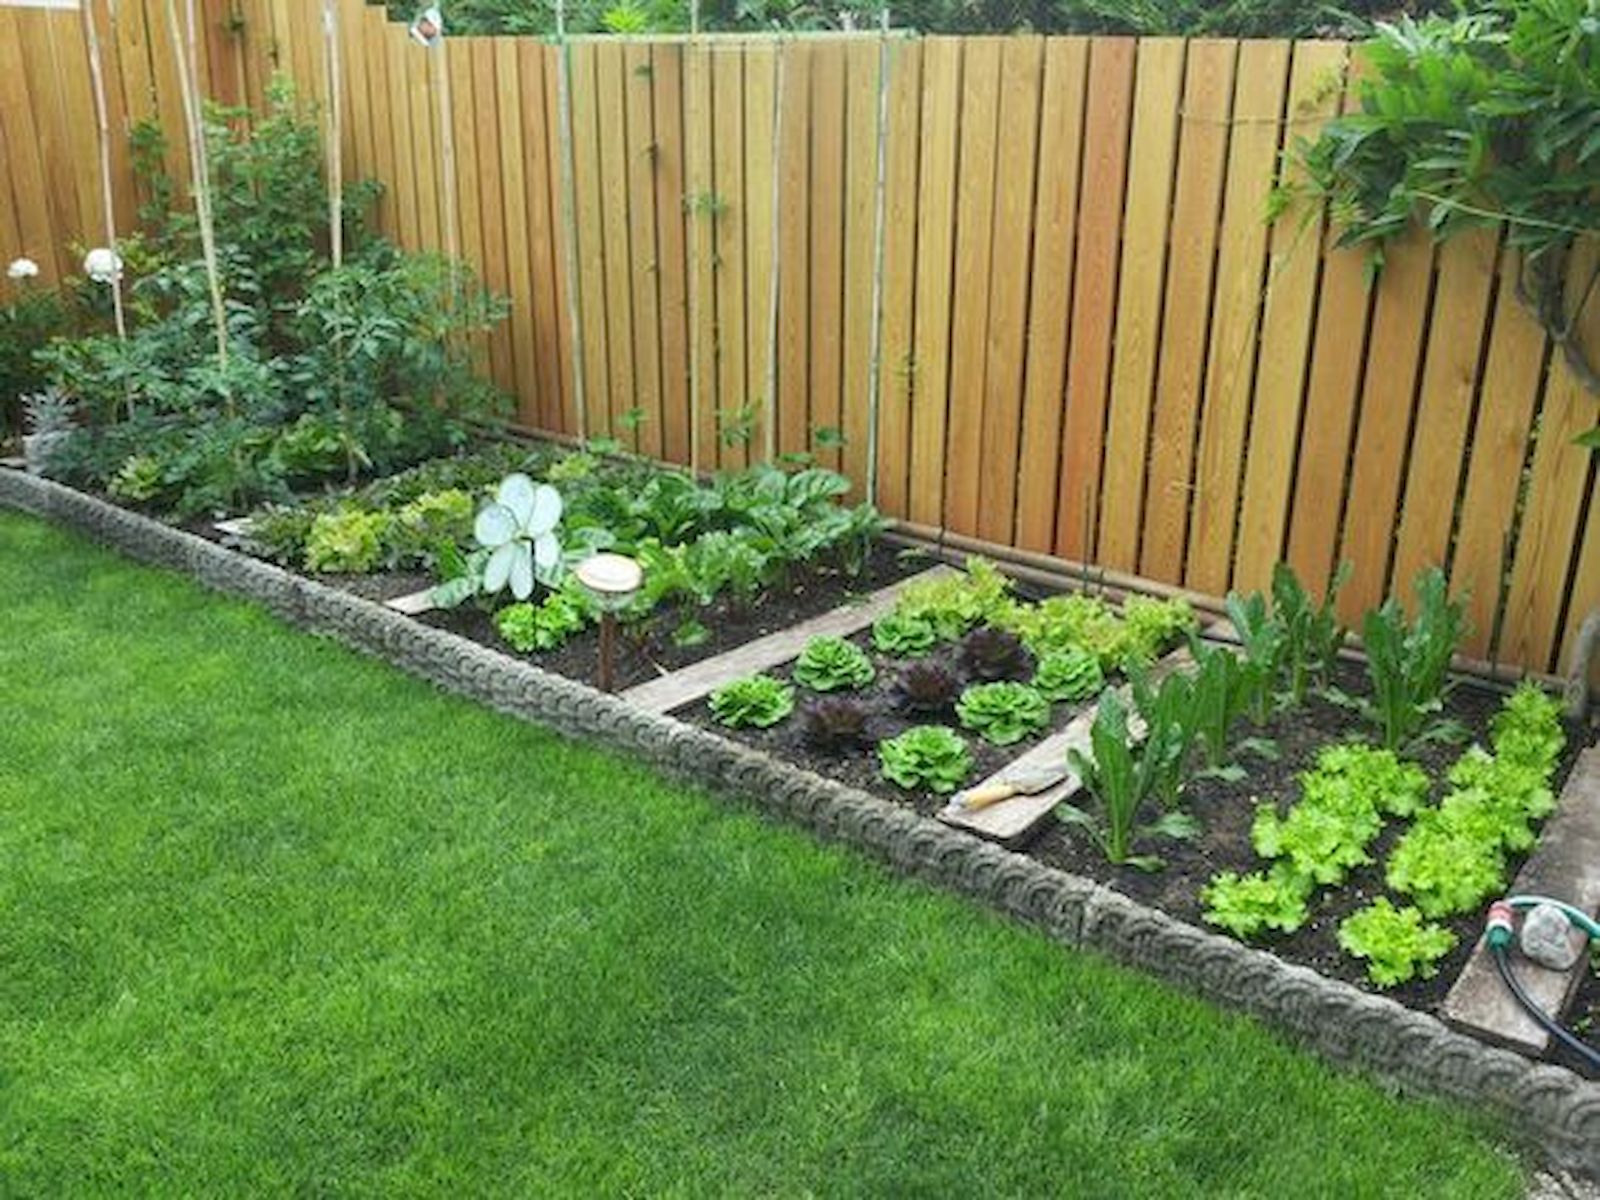 Kerttervezési tippek kezdőknek - Megyeri Szabolcs kertész blogja